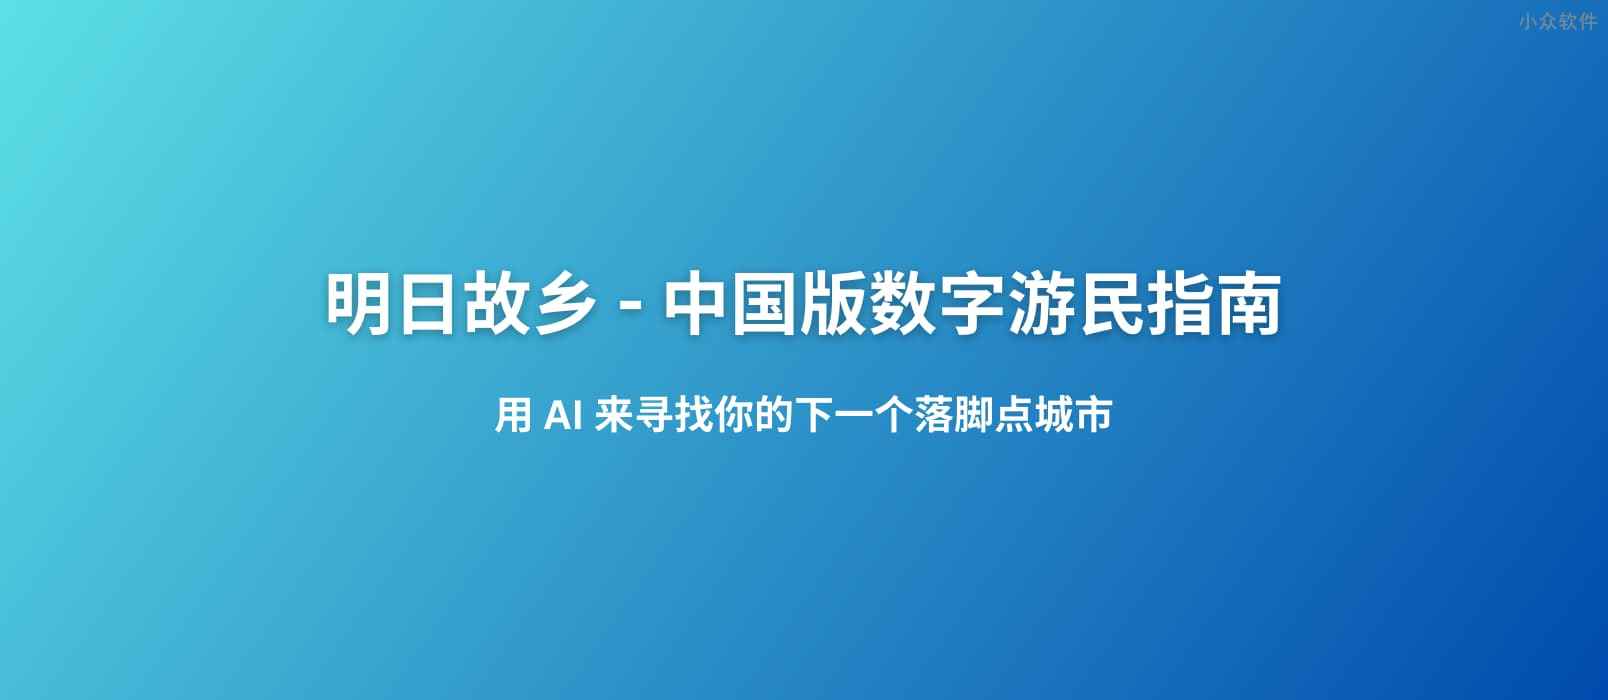 明日故乡 - 中国版数字游民指南：用 AI 来寻找有星巴克、麦当劳，全年雨天小于 60 天，最高气温低于 30 度的城市，目前包括 2206 个城市数据